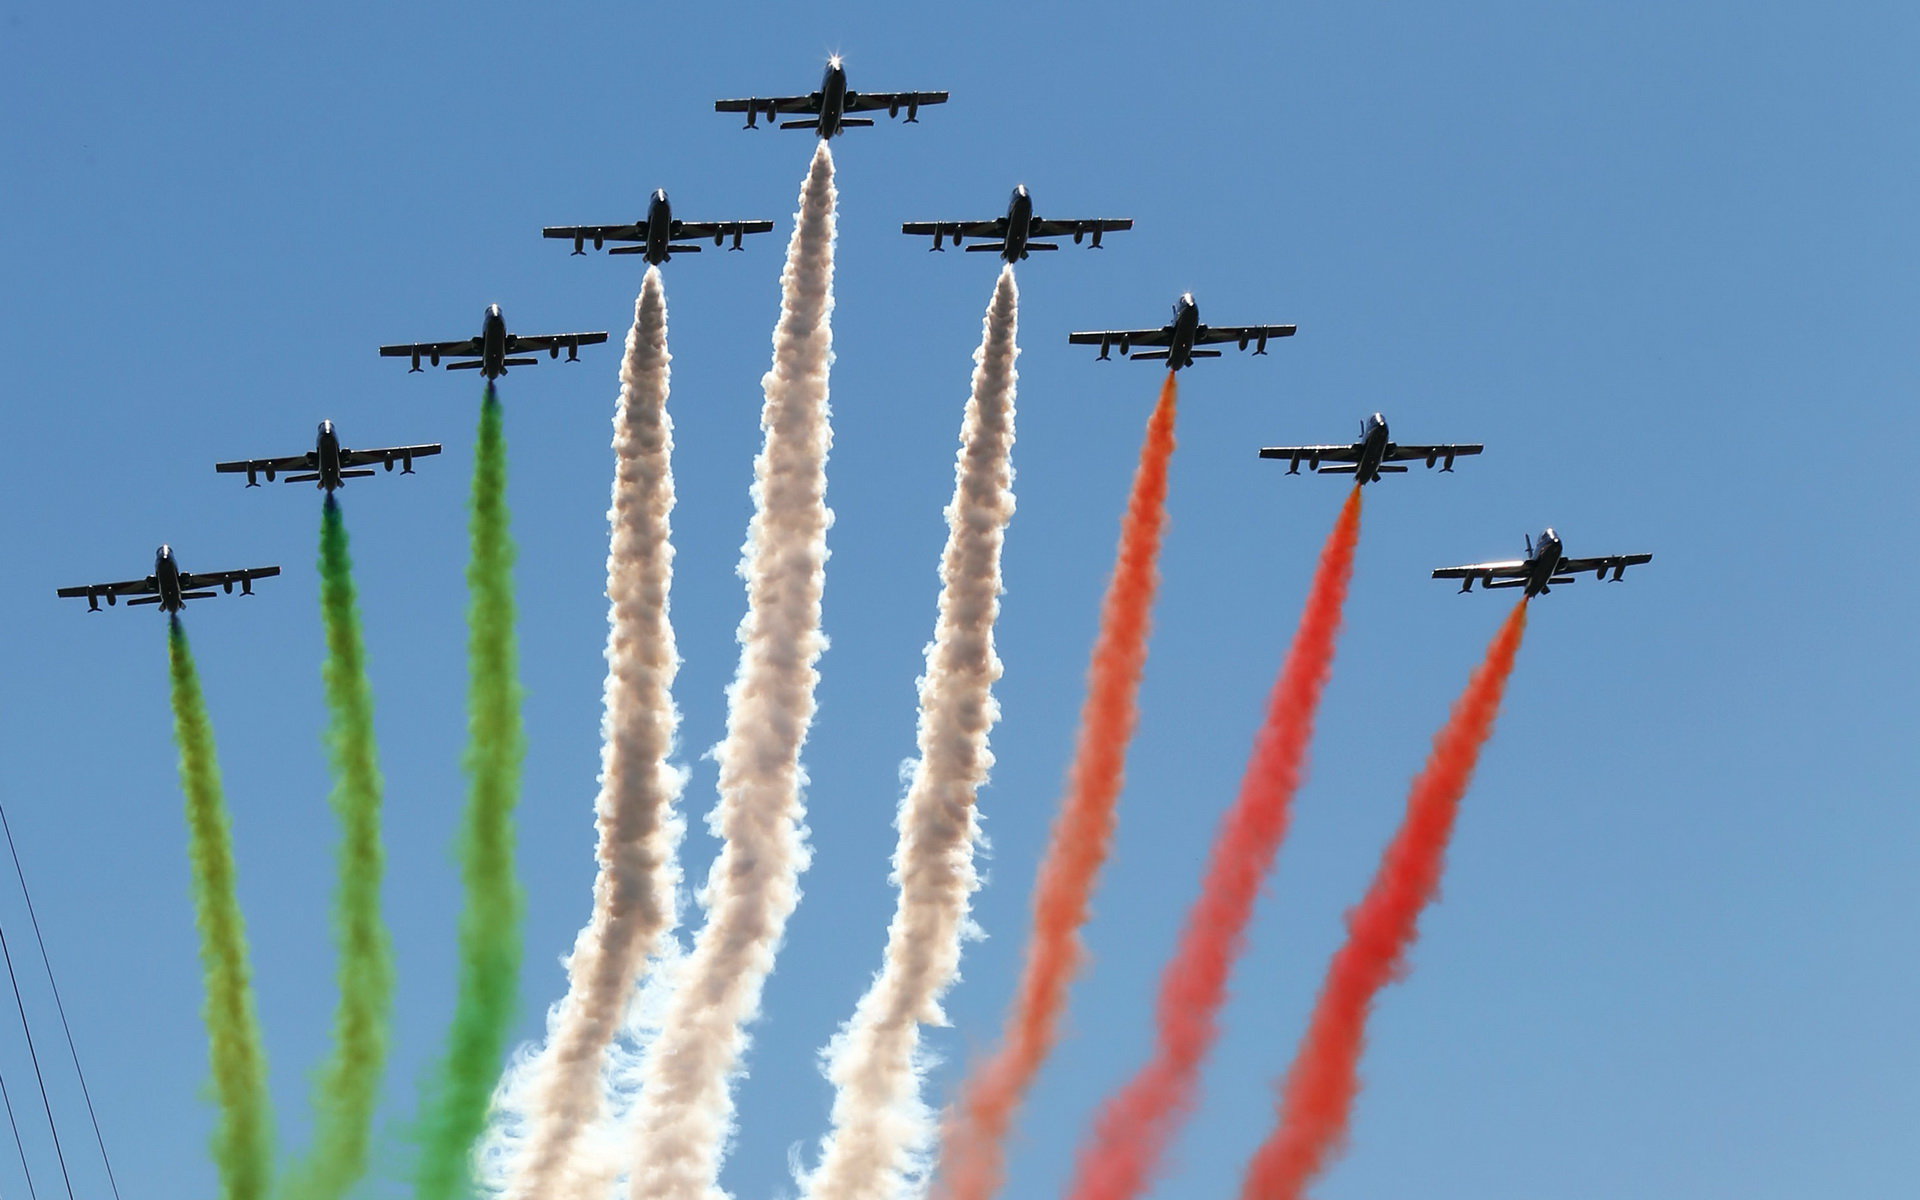 Letecká show před závodem, GP Itálie (Monza)